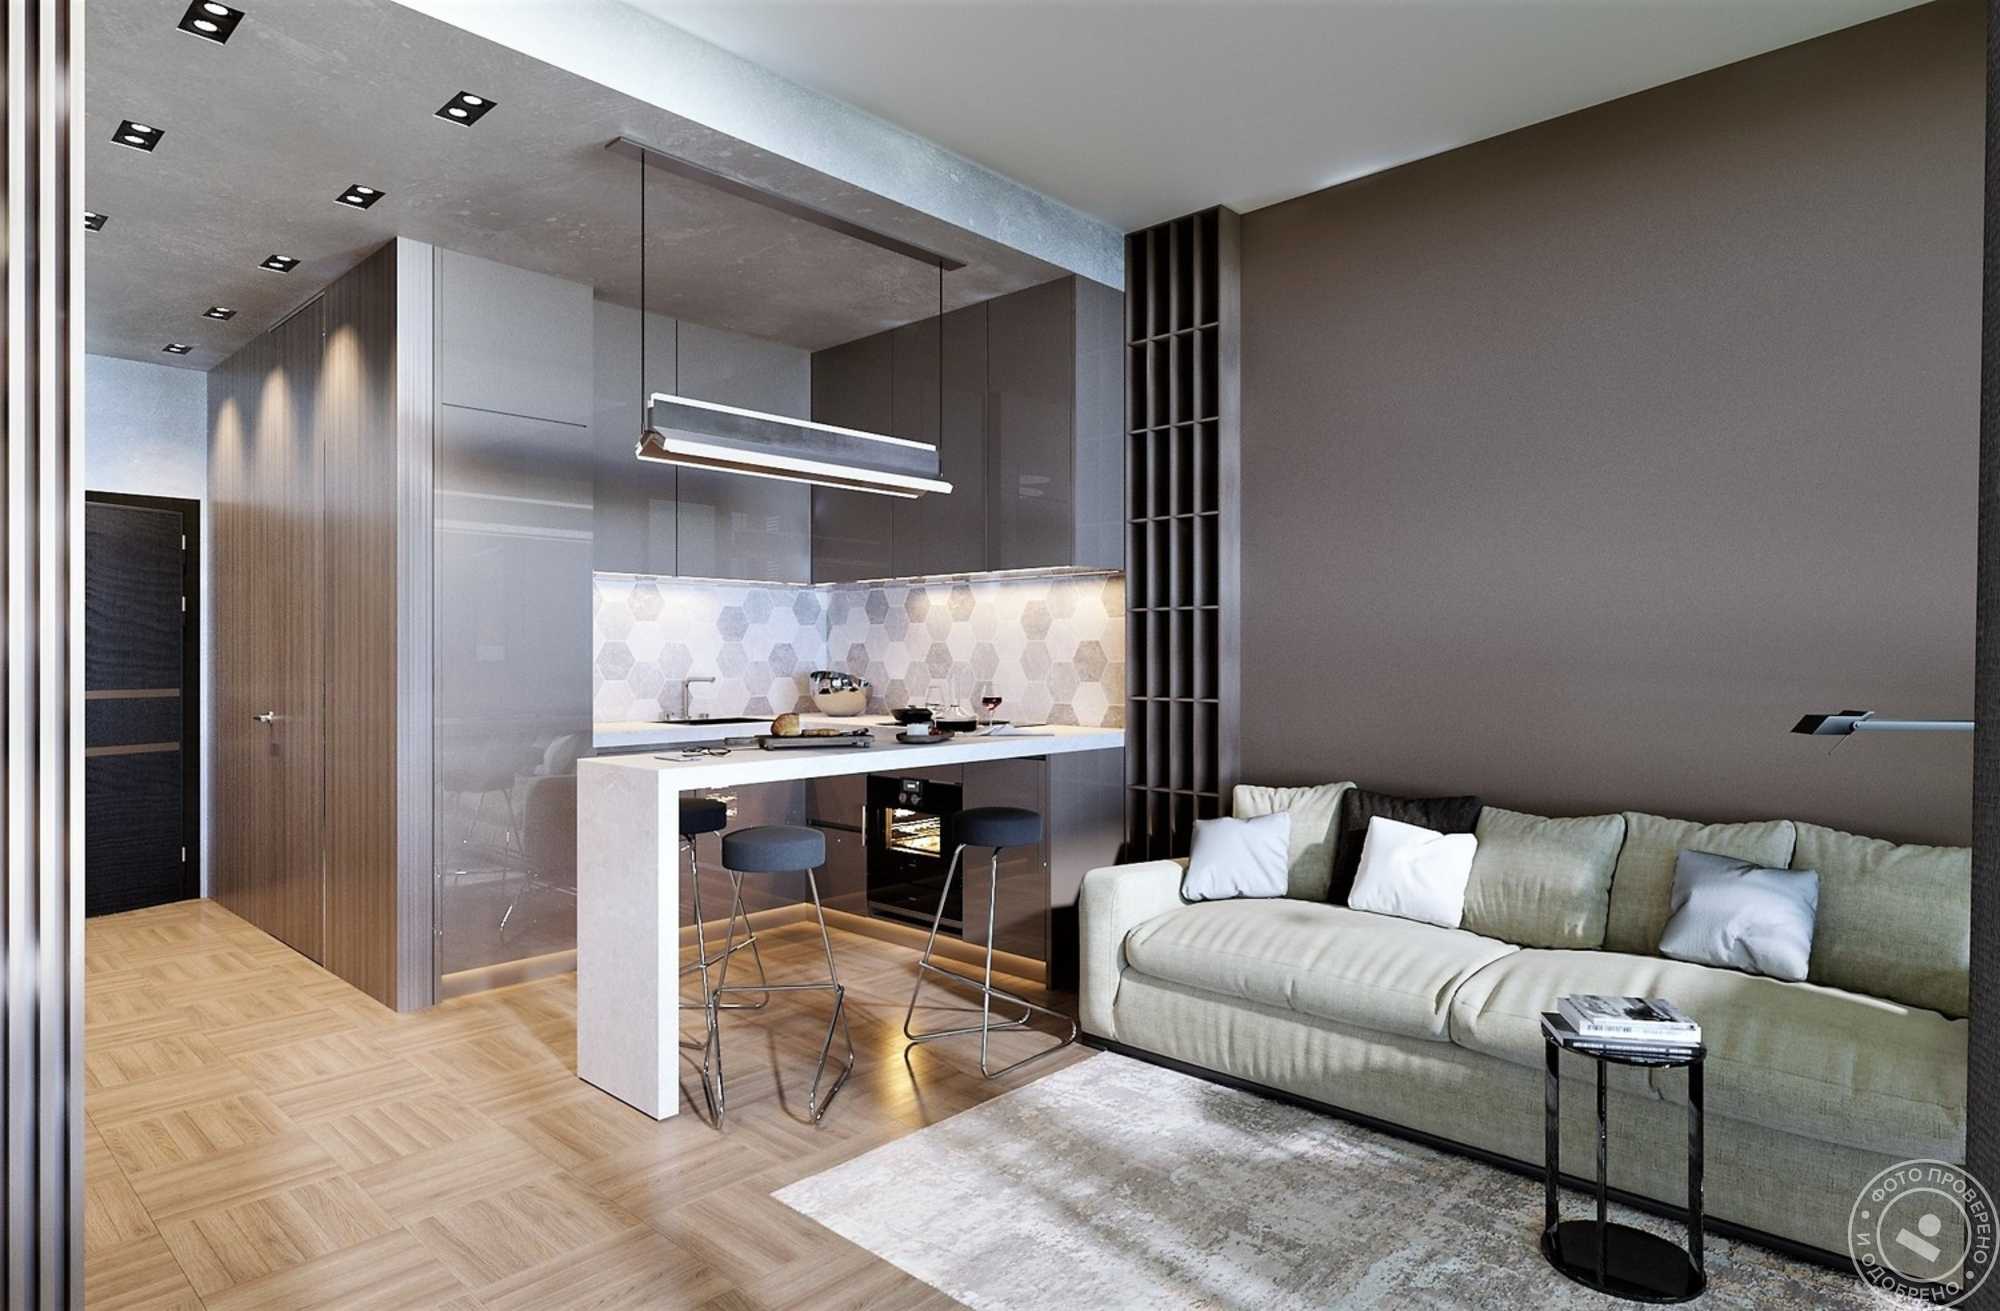 Дизайн маленькой квартиры - фото модных идей оформления интерьера